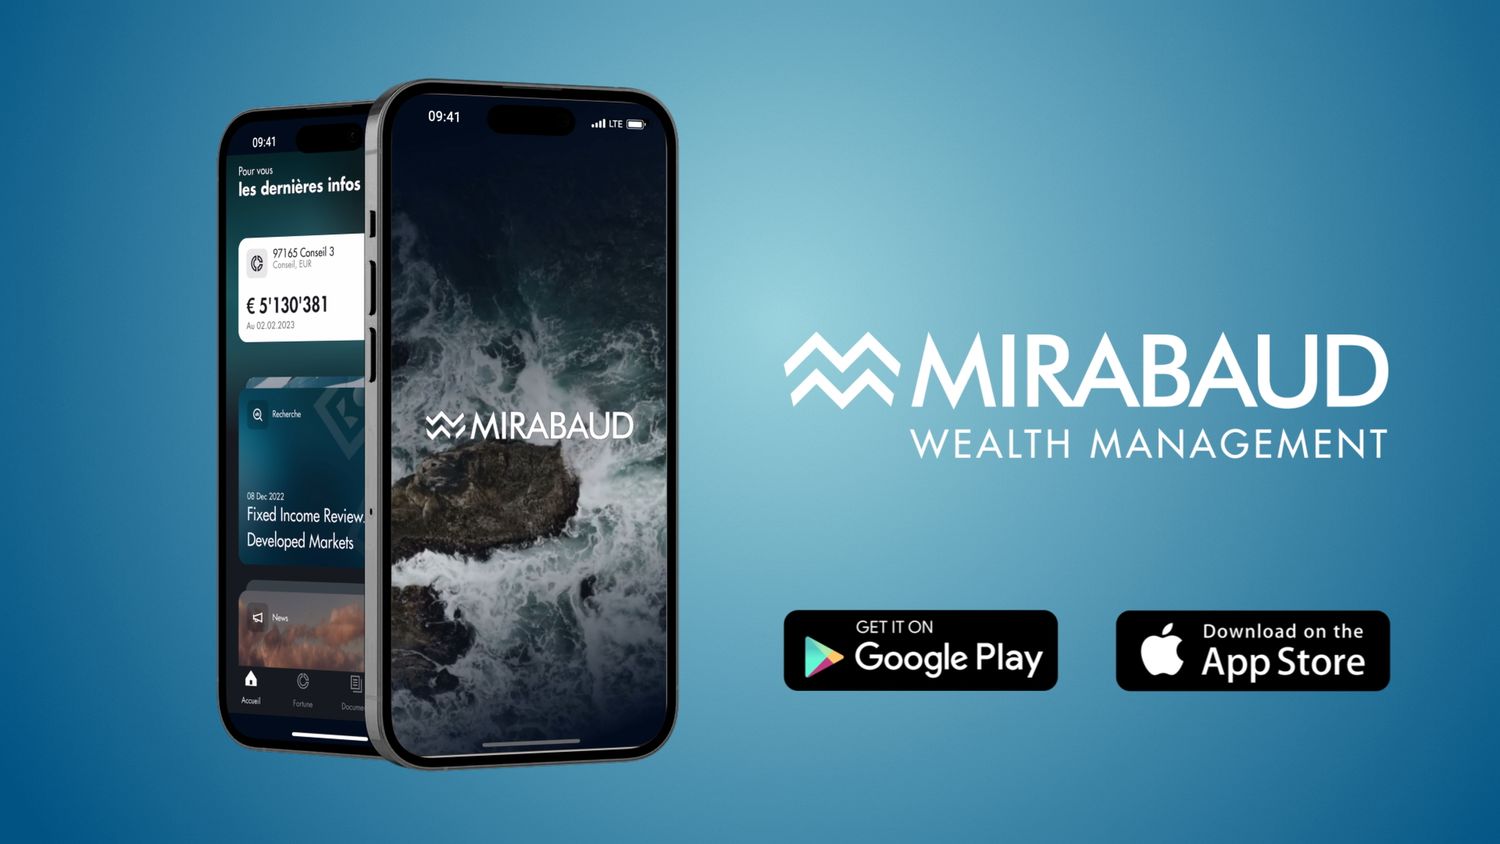 L'application mobile Mirabaud Wealth Management est disponible